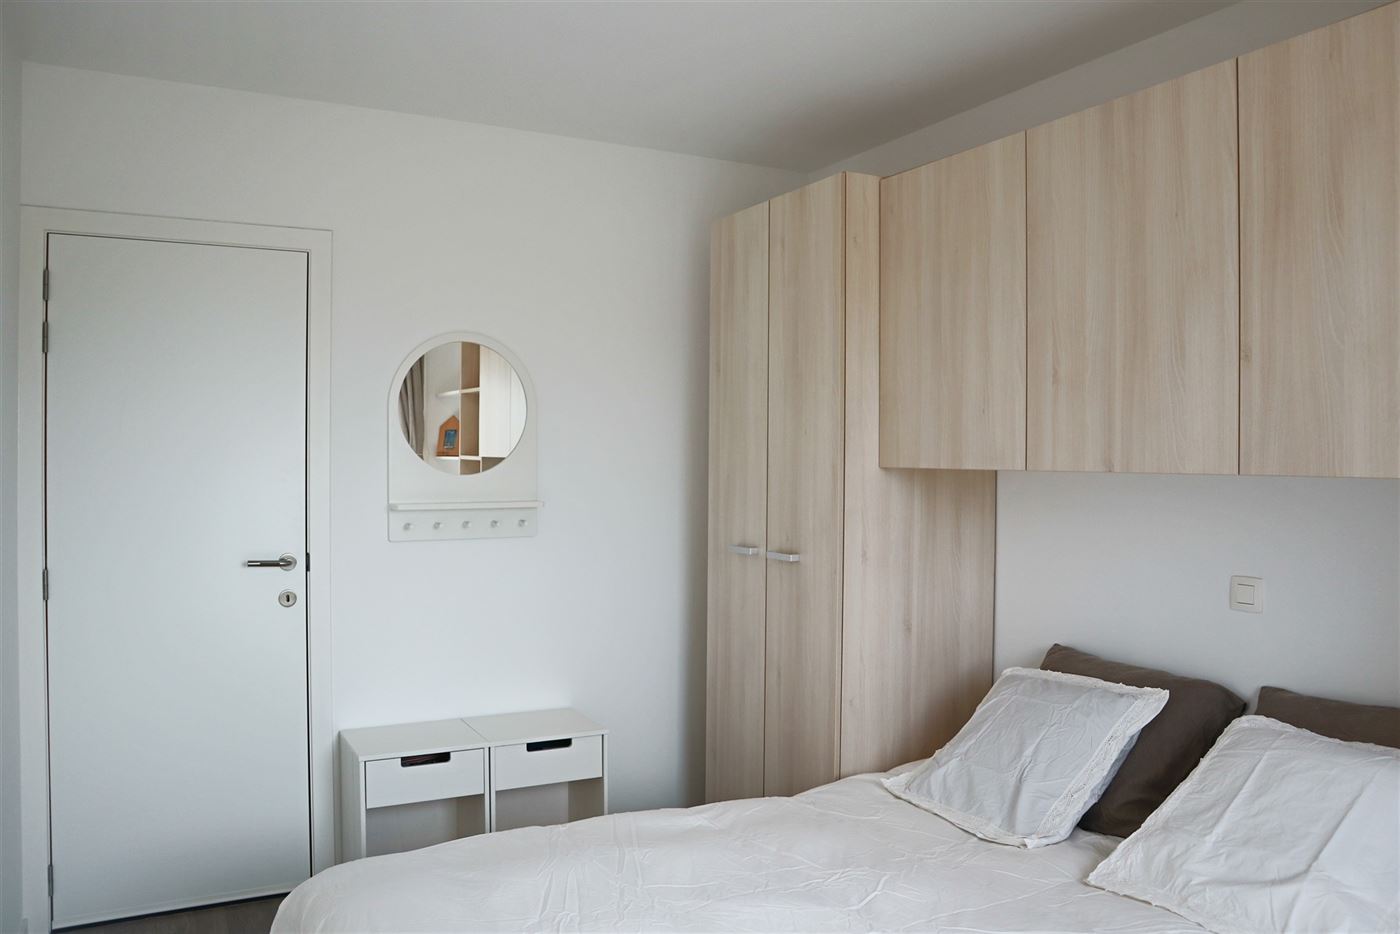 Villa Aello 0203 - Recent fris appartement met twee slaapkamers - Zonnige oriëntatie van op de tweede verdieping - Inkom - Apart toilet - Badkamer me...